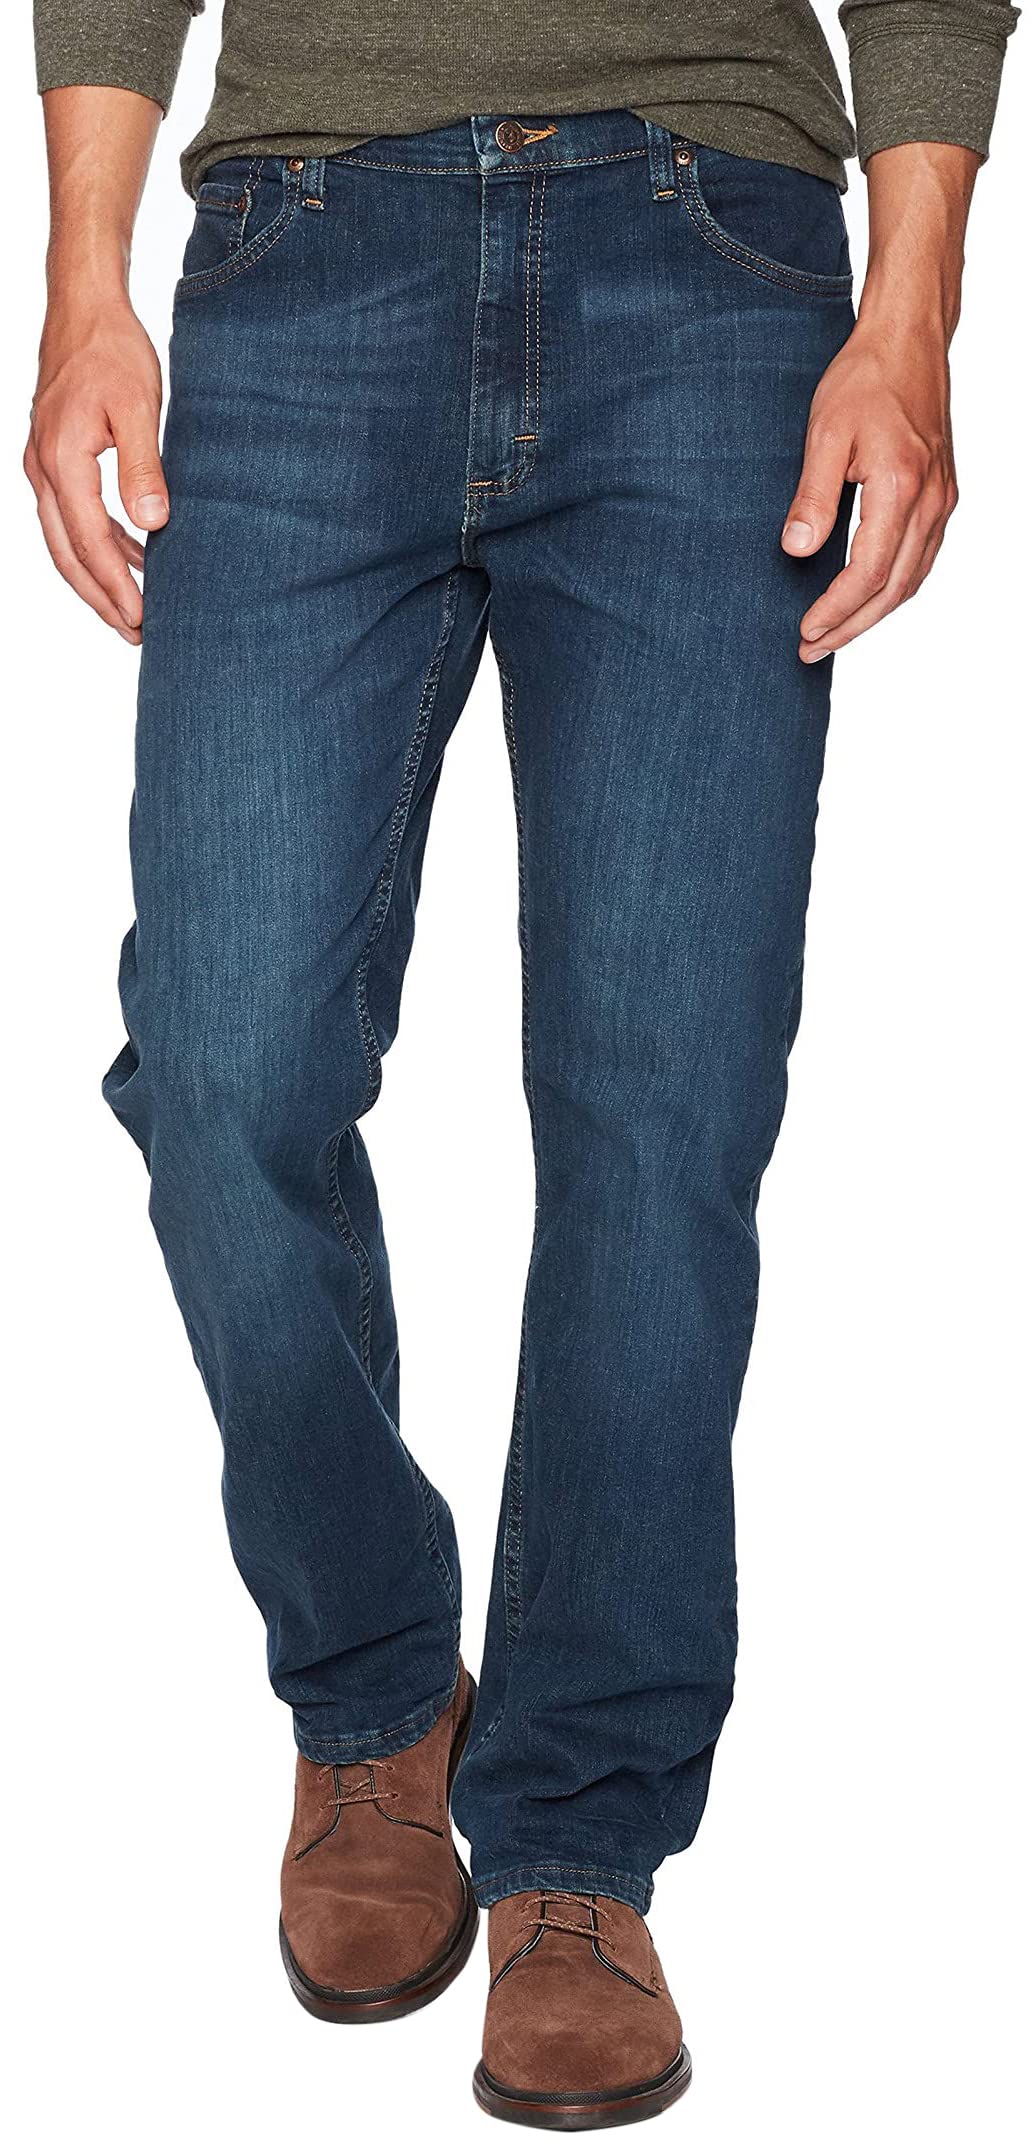 Wrangler Authentics Men's Big & Tall Classic 5-Pocket Regular Fit Jean, Twilight Flex, 50W x 30L